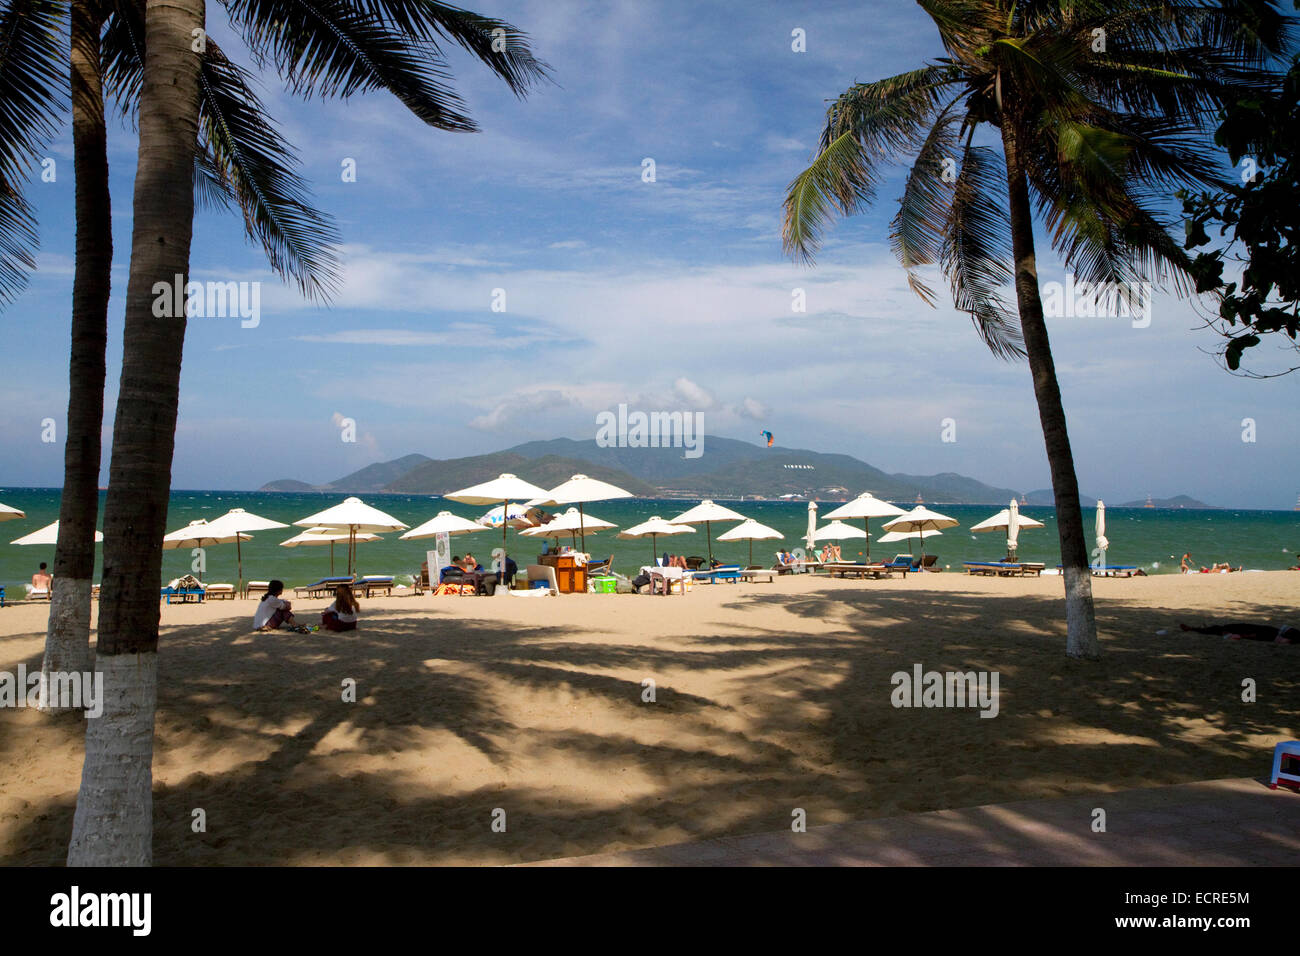 Beach scene at Nha Trang, Vietnam. Stock Photo